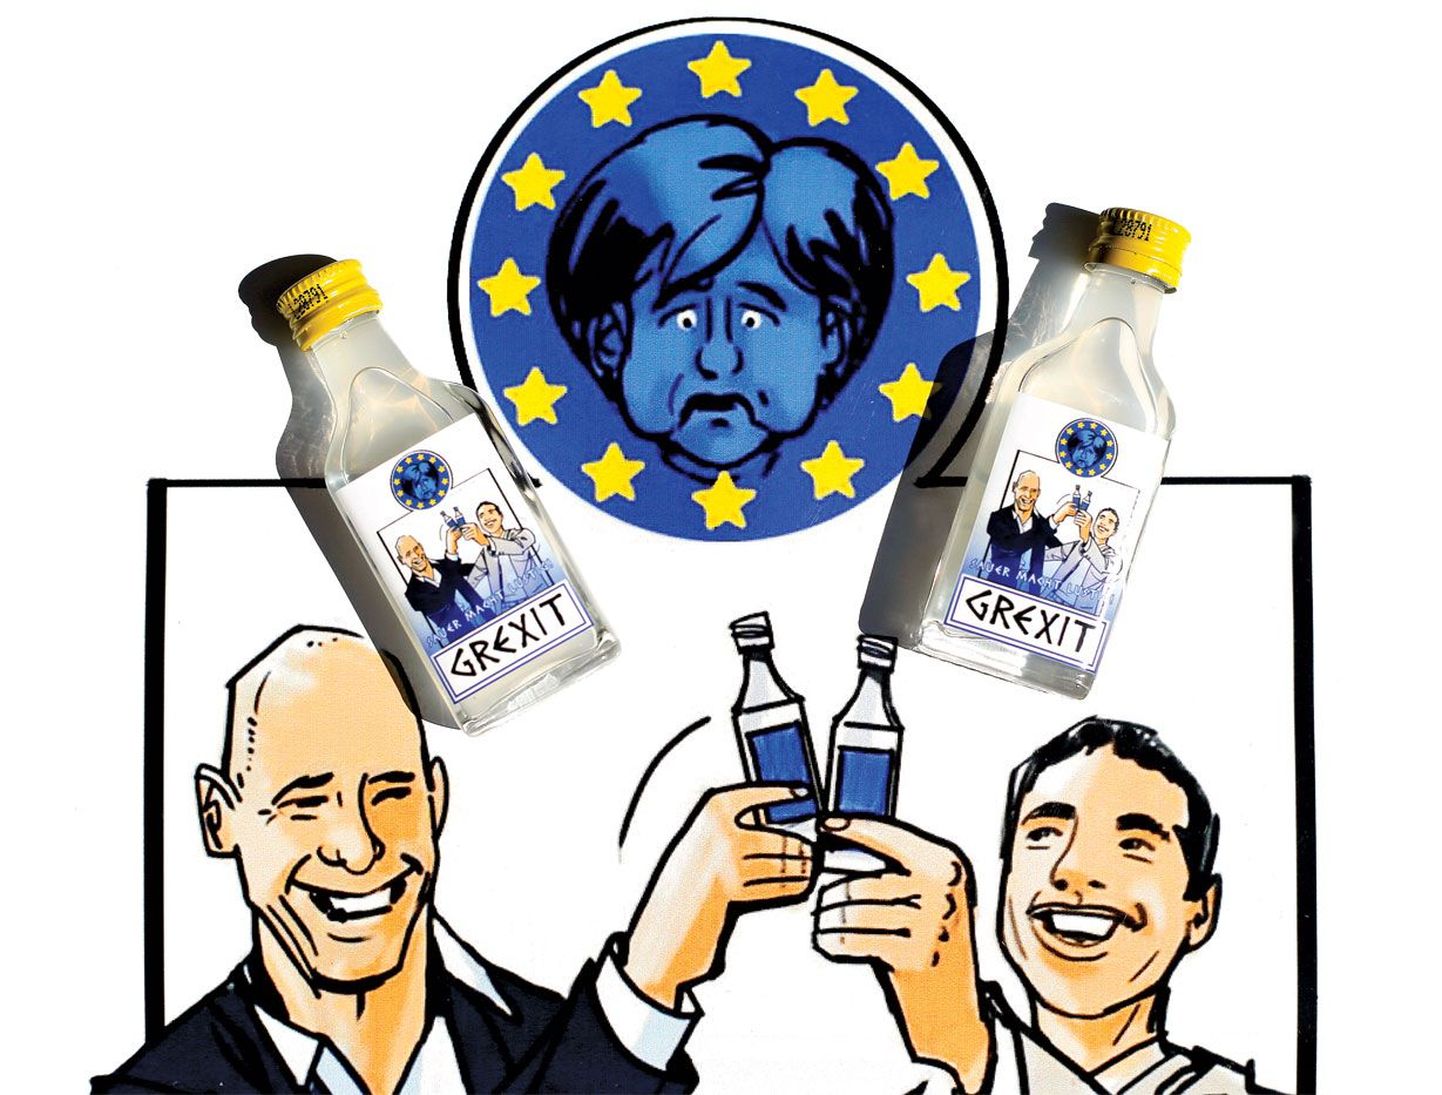 Лимонная водка Grexit выглядит артефактом из альтернативной реальности. В нашем мире Греция не вышла из еврозоны, а канцлер Германии (наверху) победила греков в лице премьера Ципраса (справа) и экс-министра экономики Варуфакиса.